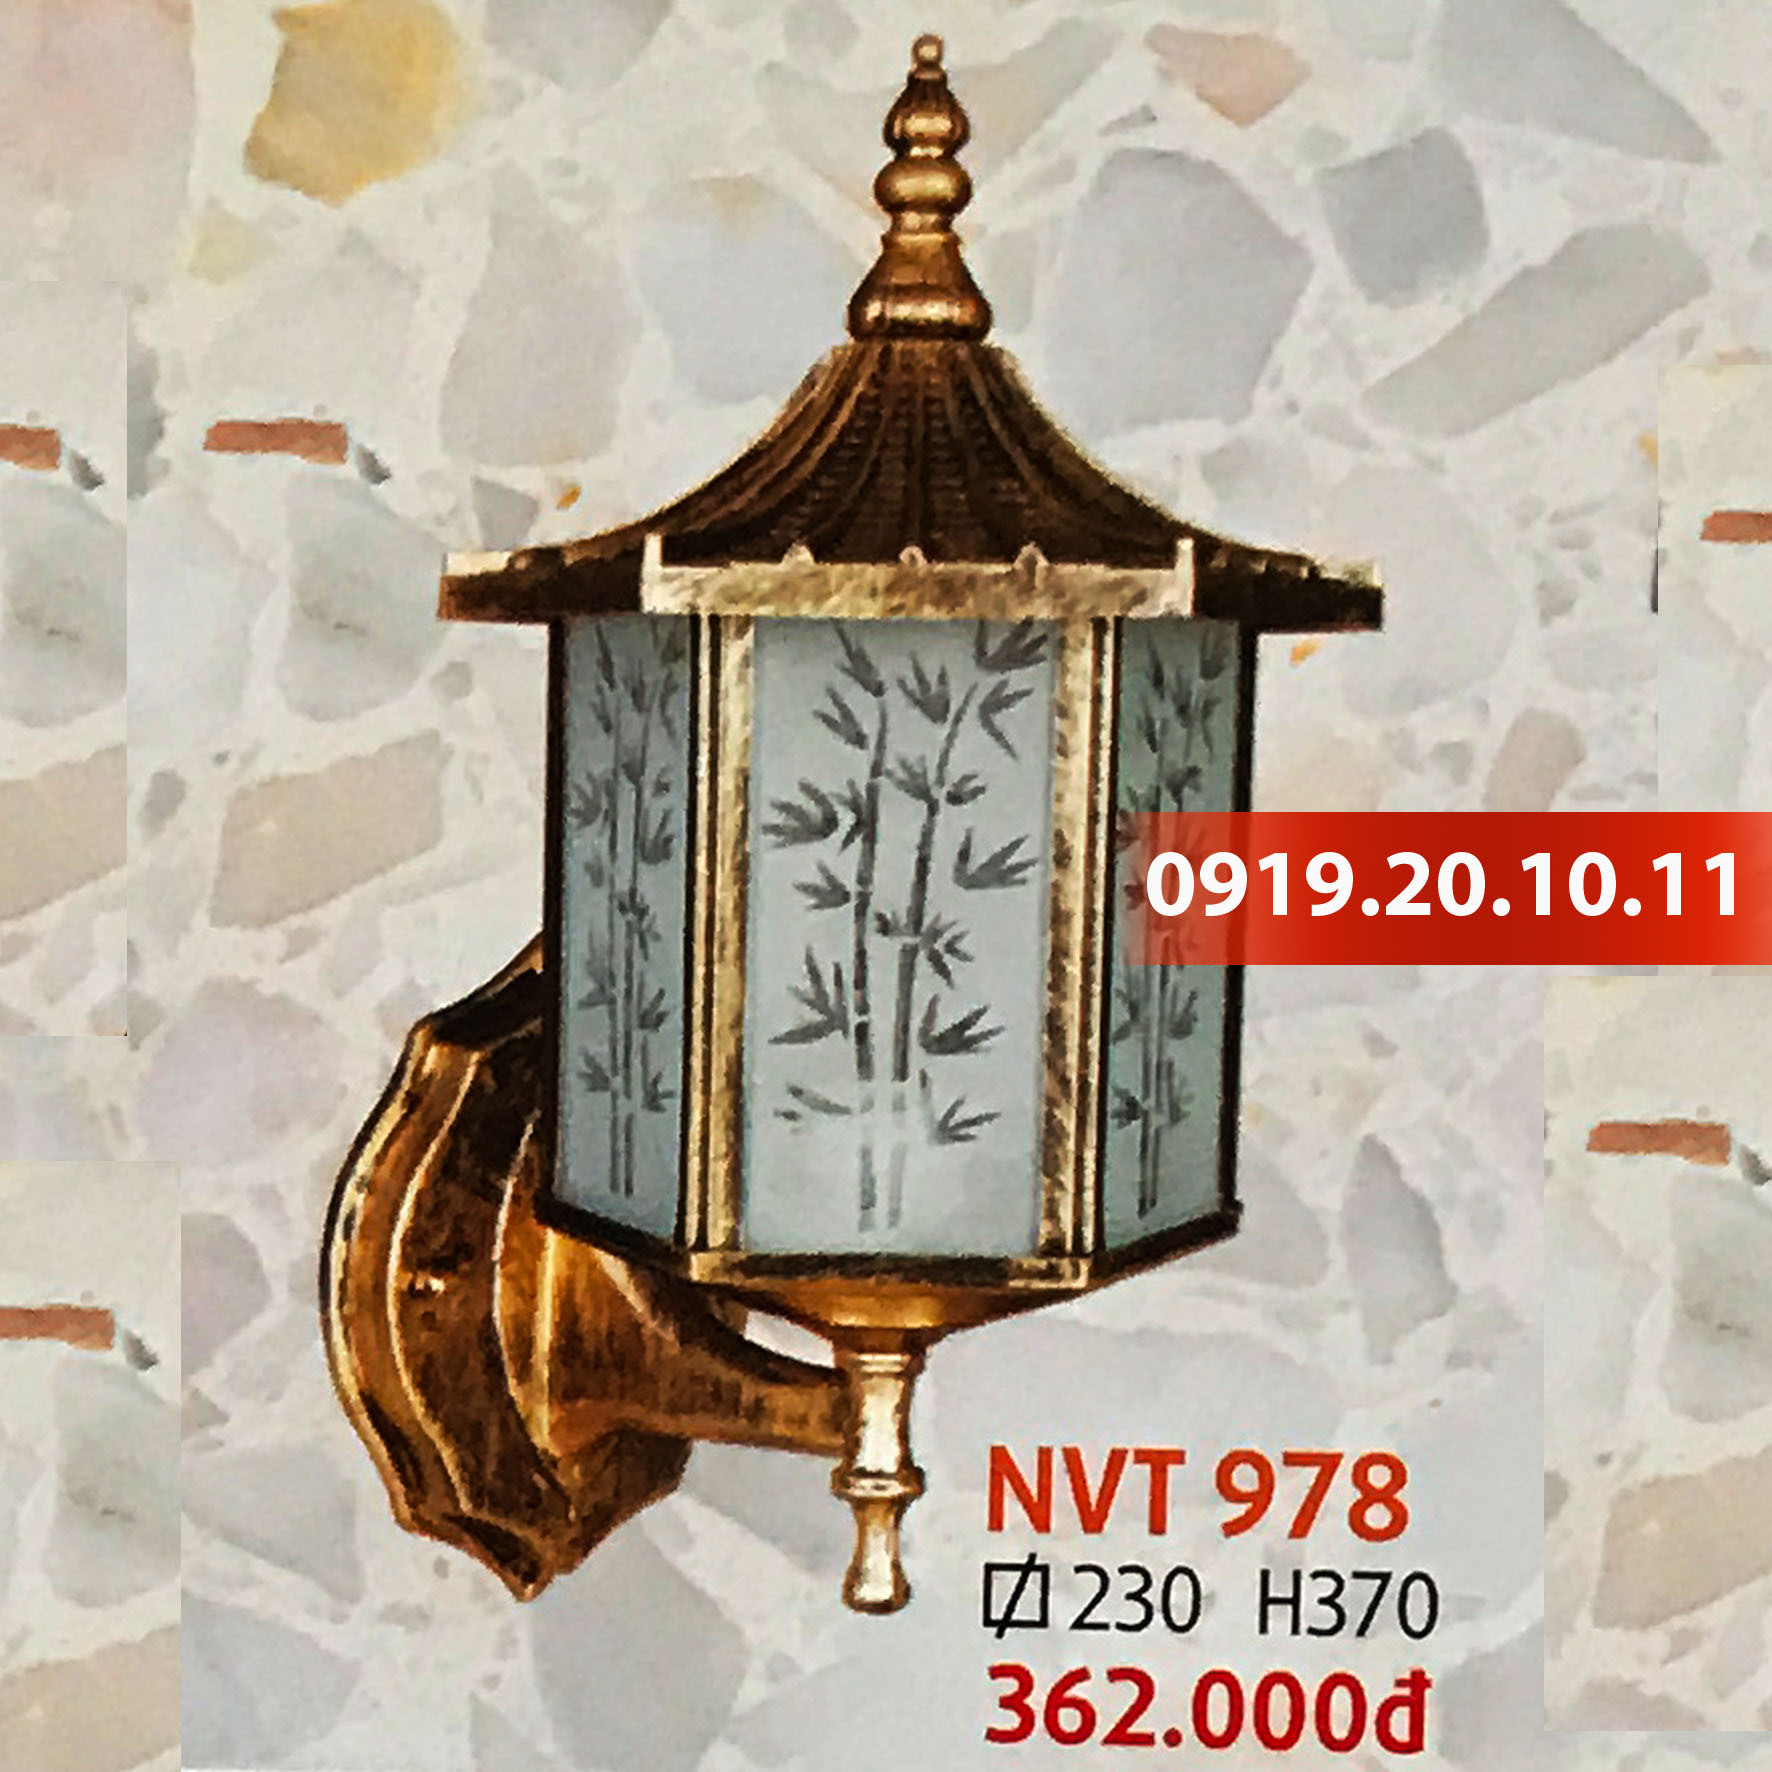 Đèn trang trí trụ cổng Netviet NVT 978